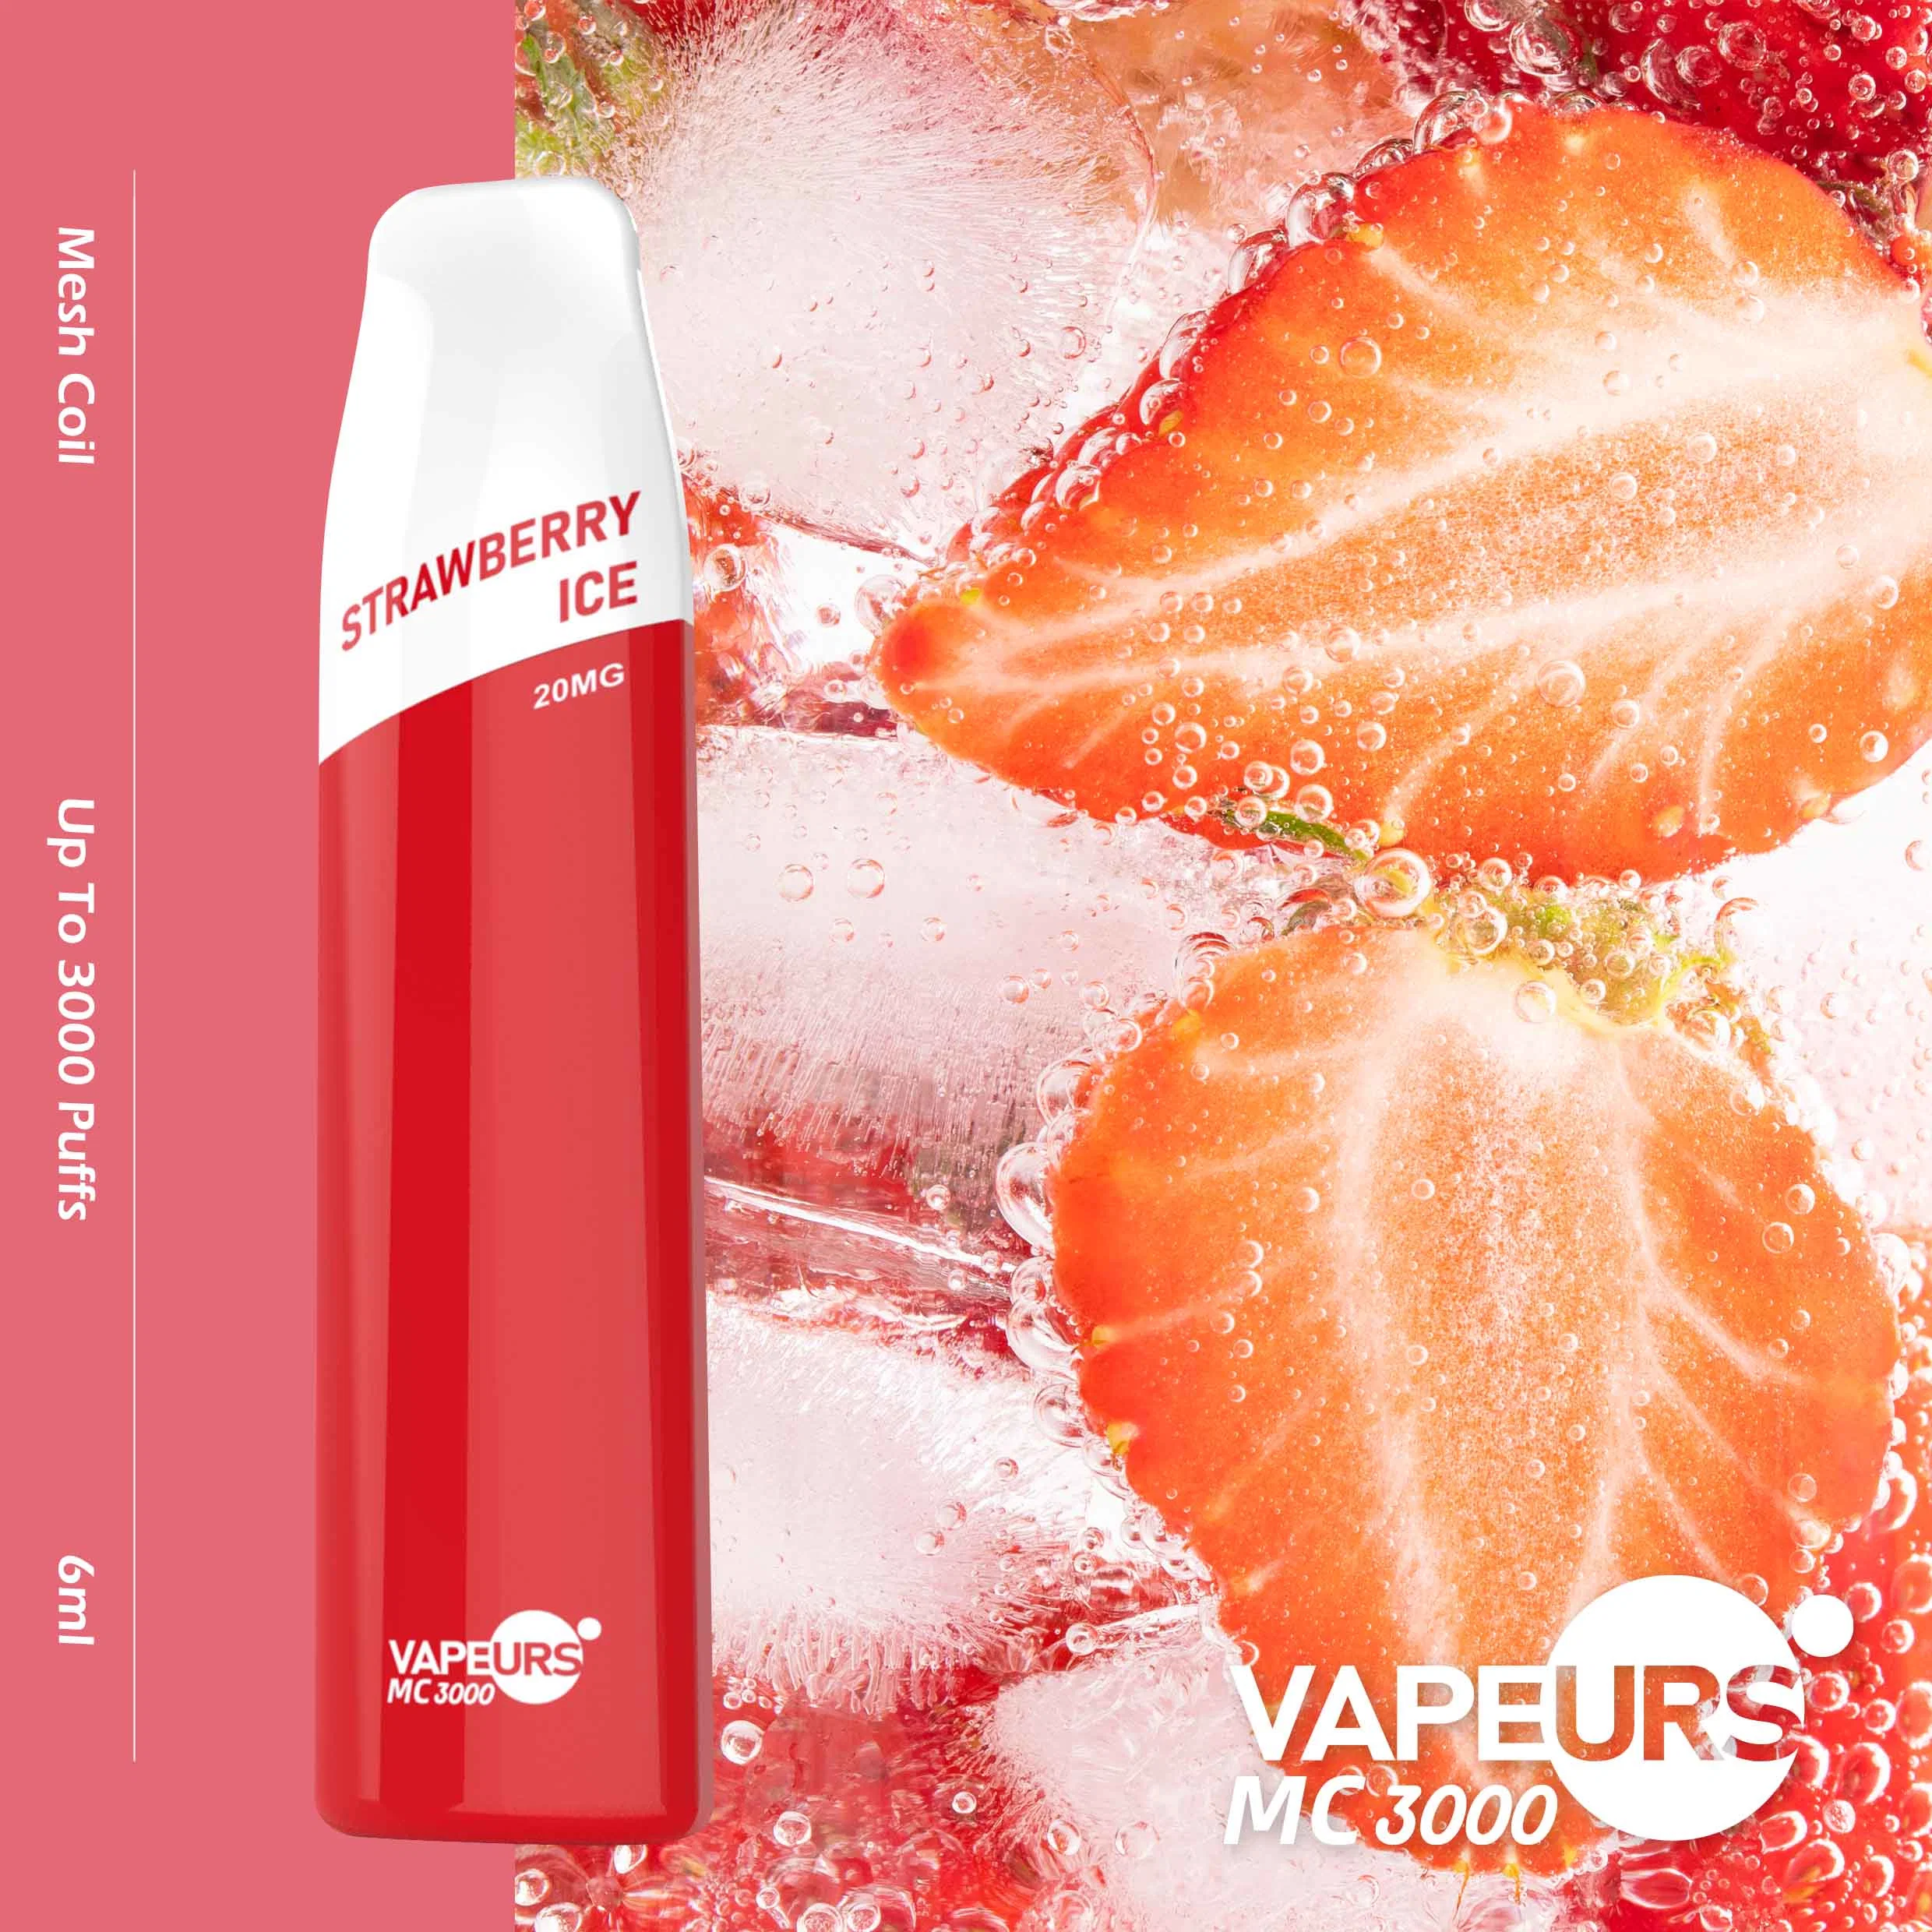 5% Electronic Cigarette E Vapor Disposable/Chargeable Vaporizer Pen Fruit Flavor 3000 Puffs Original Factory Vape Pen